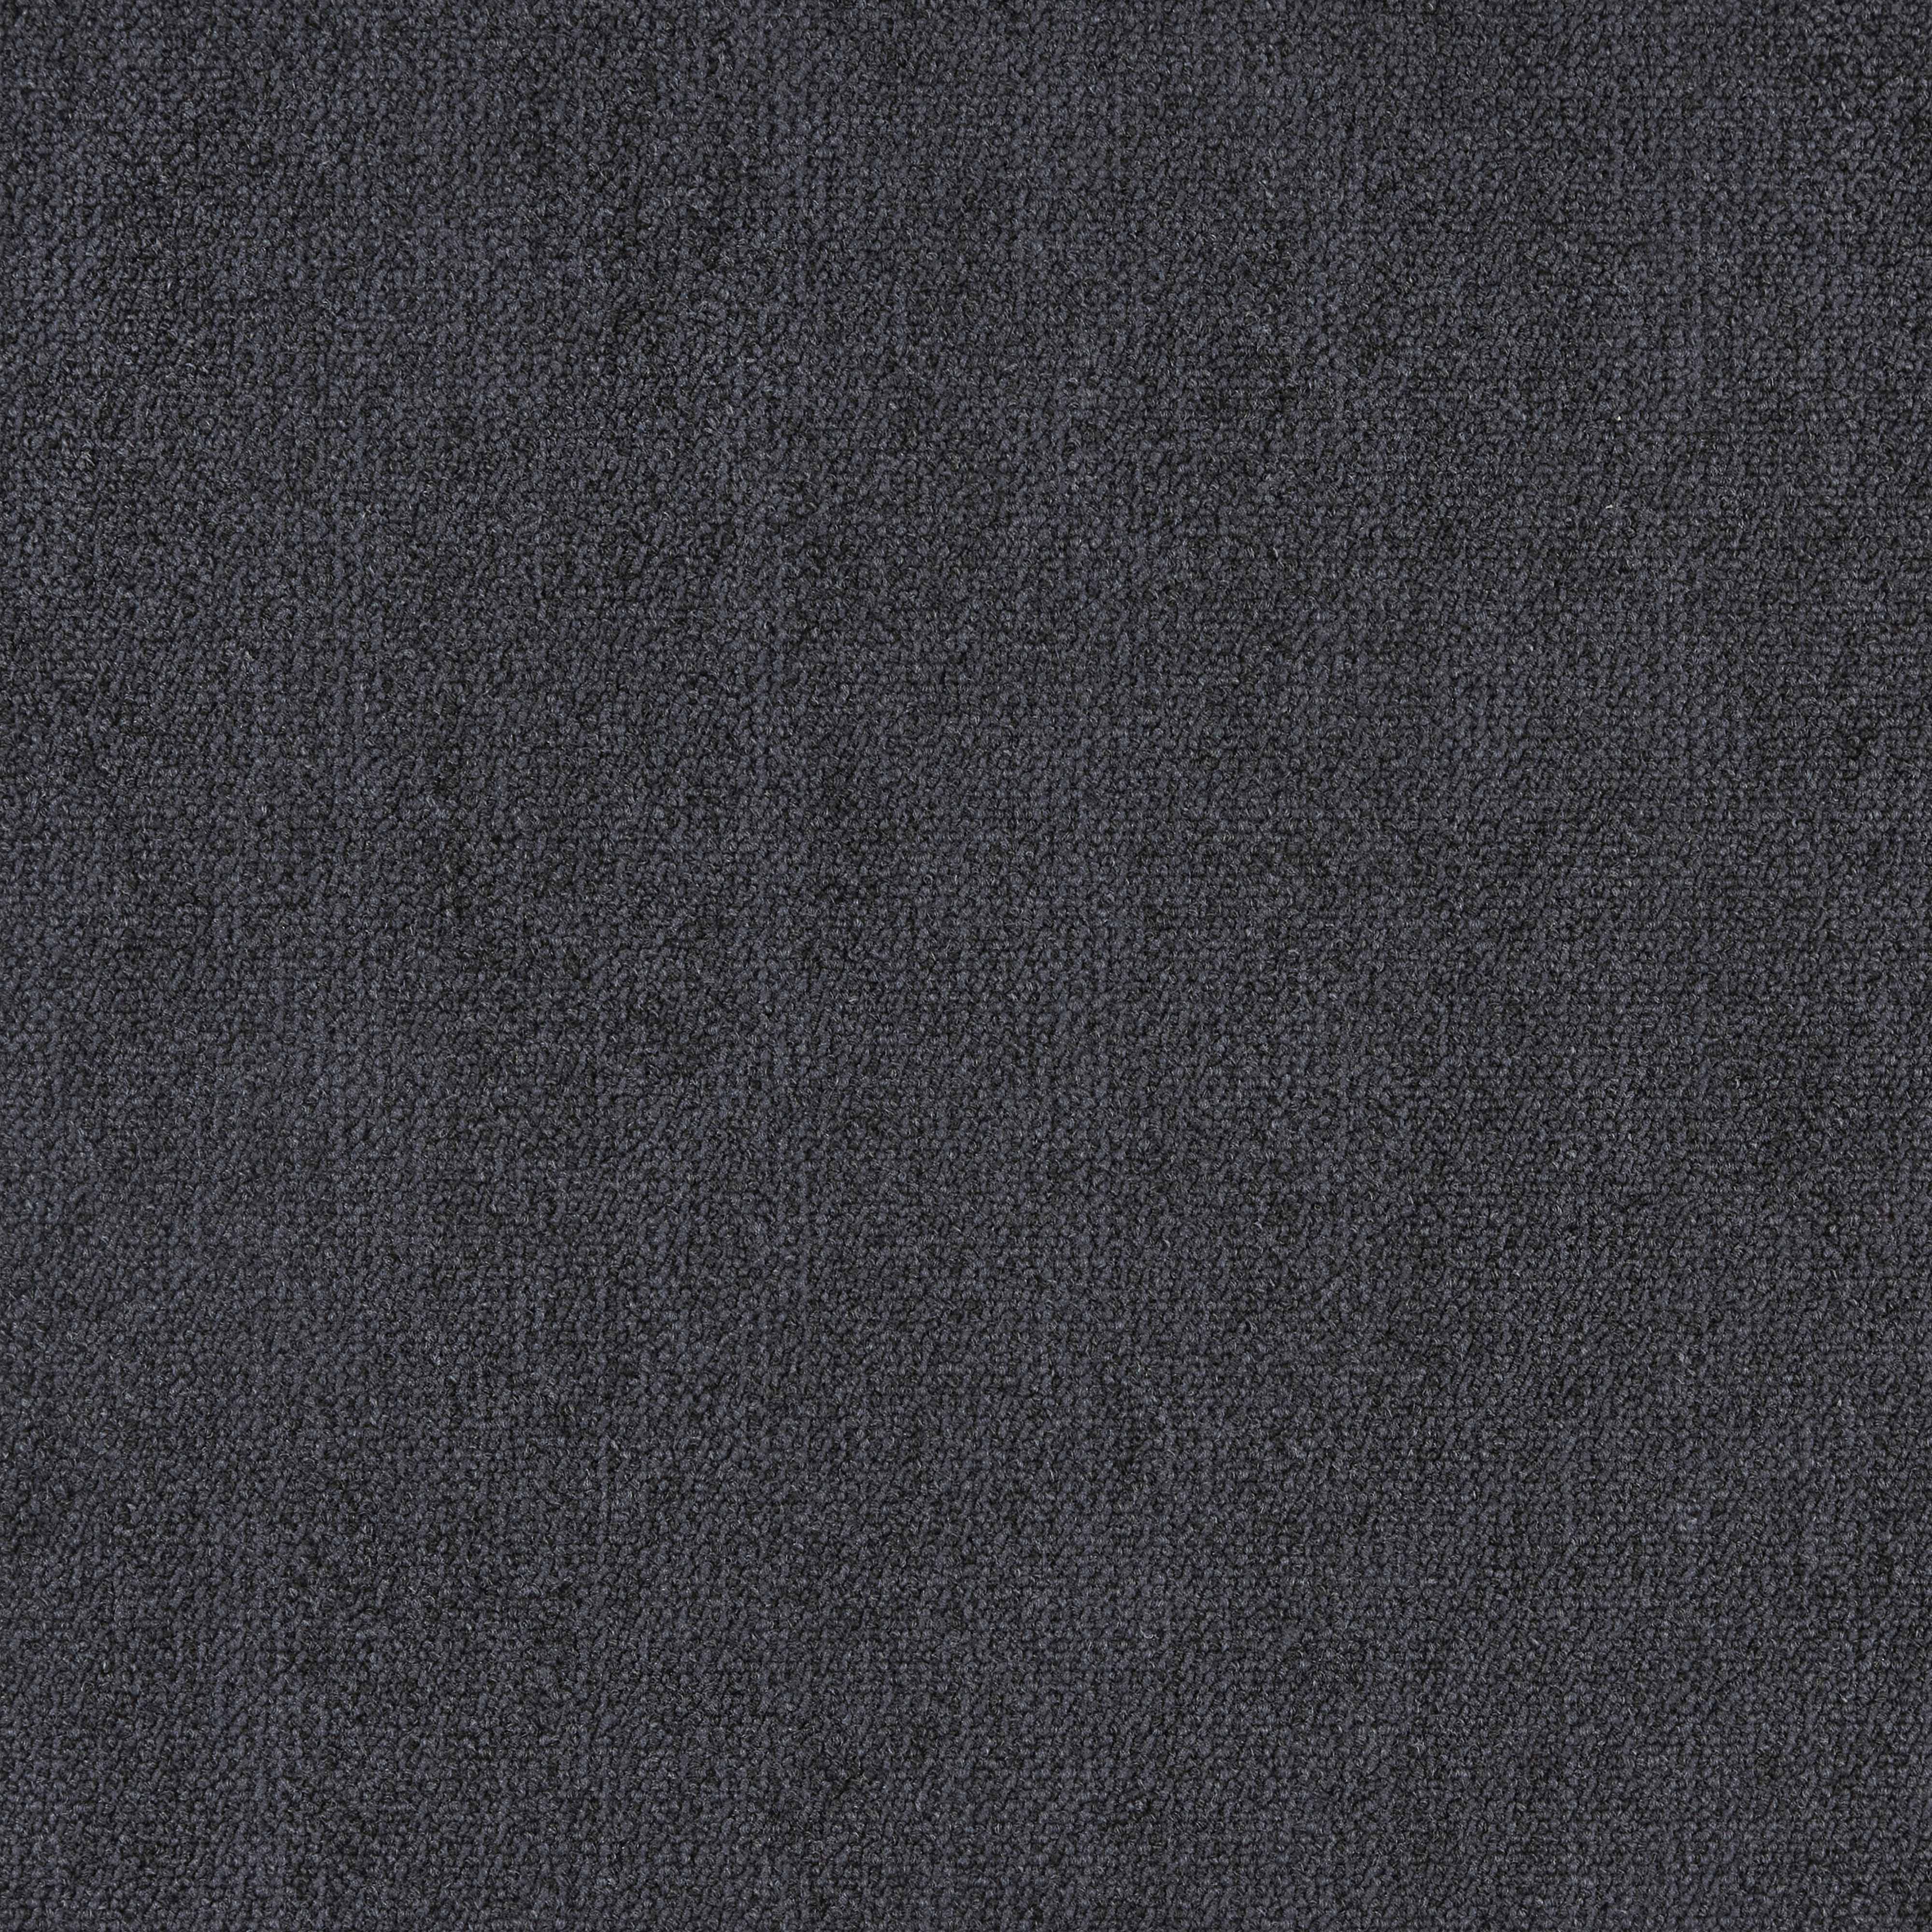 Ковровая плитка Innovflor Illusion F06 0.5*0.5 м